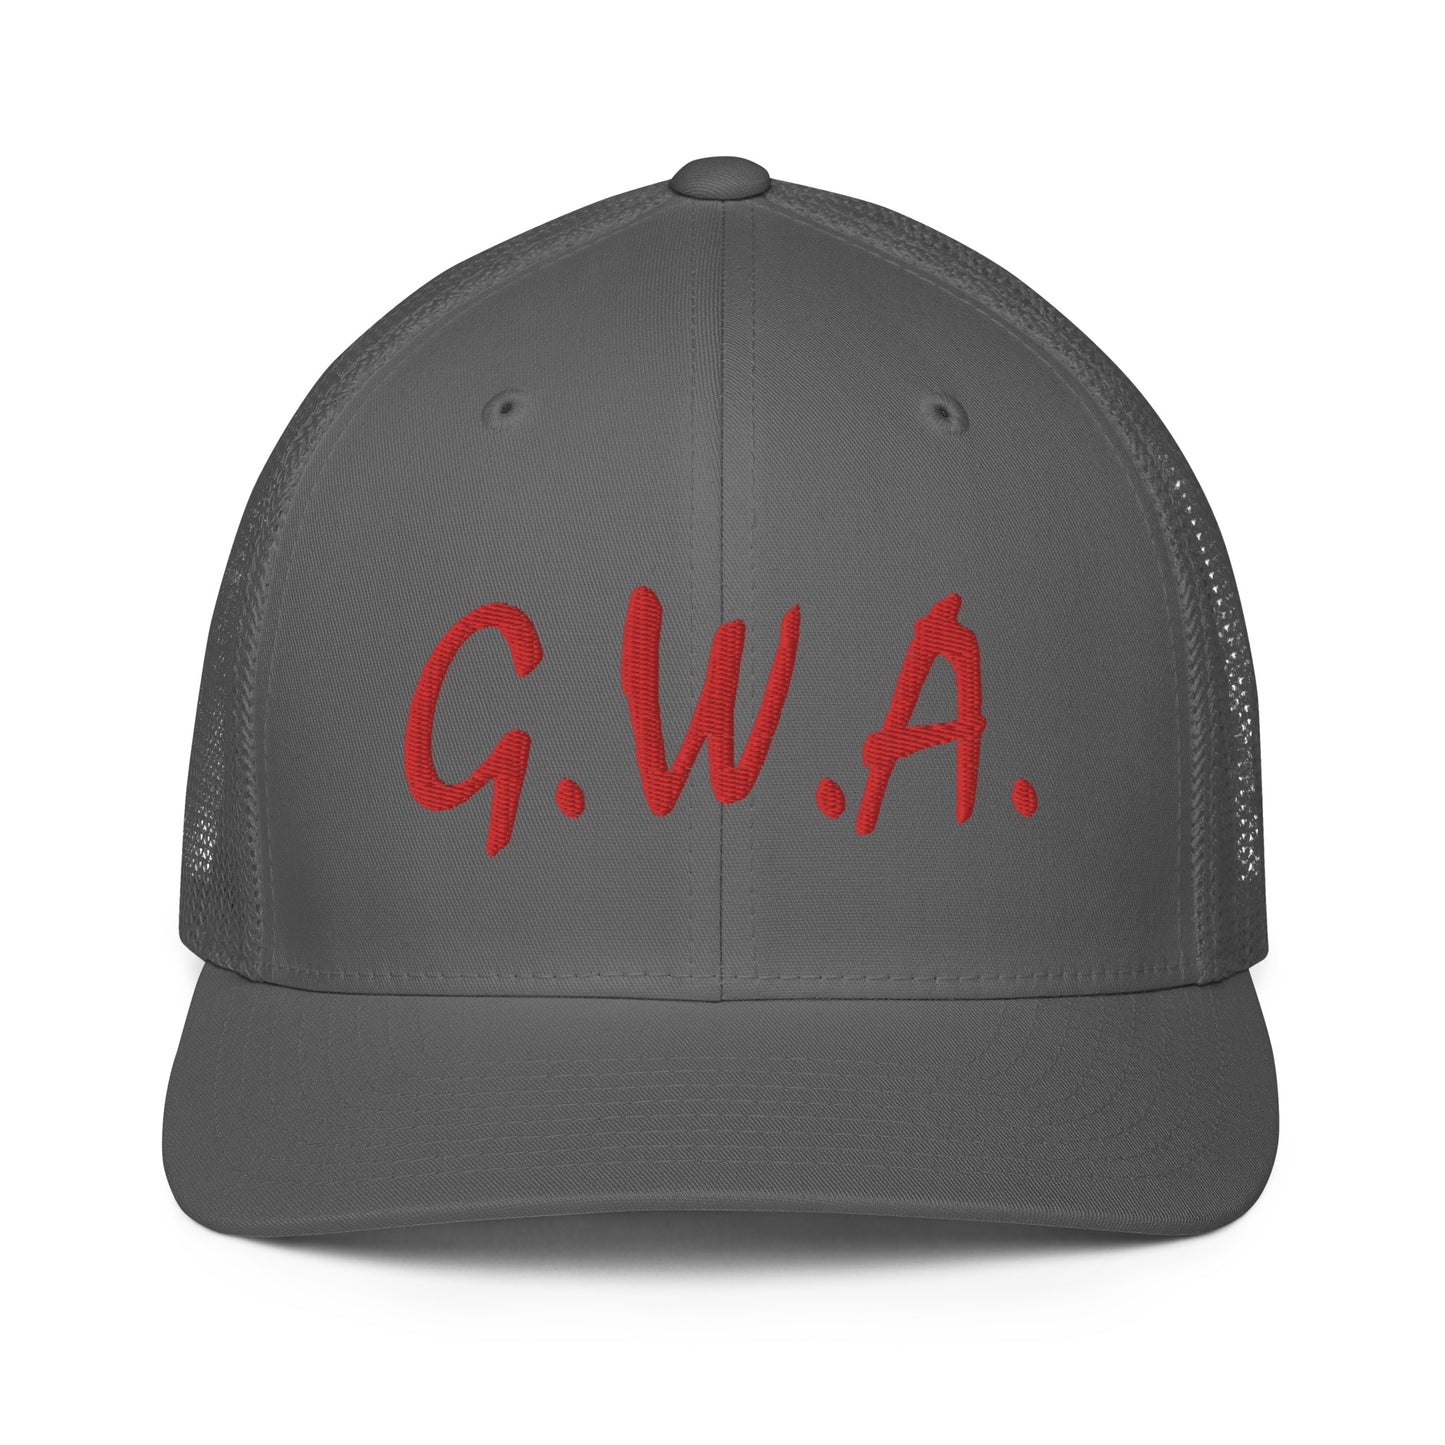 G.W.A. FLEX FIT HAT